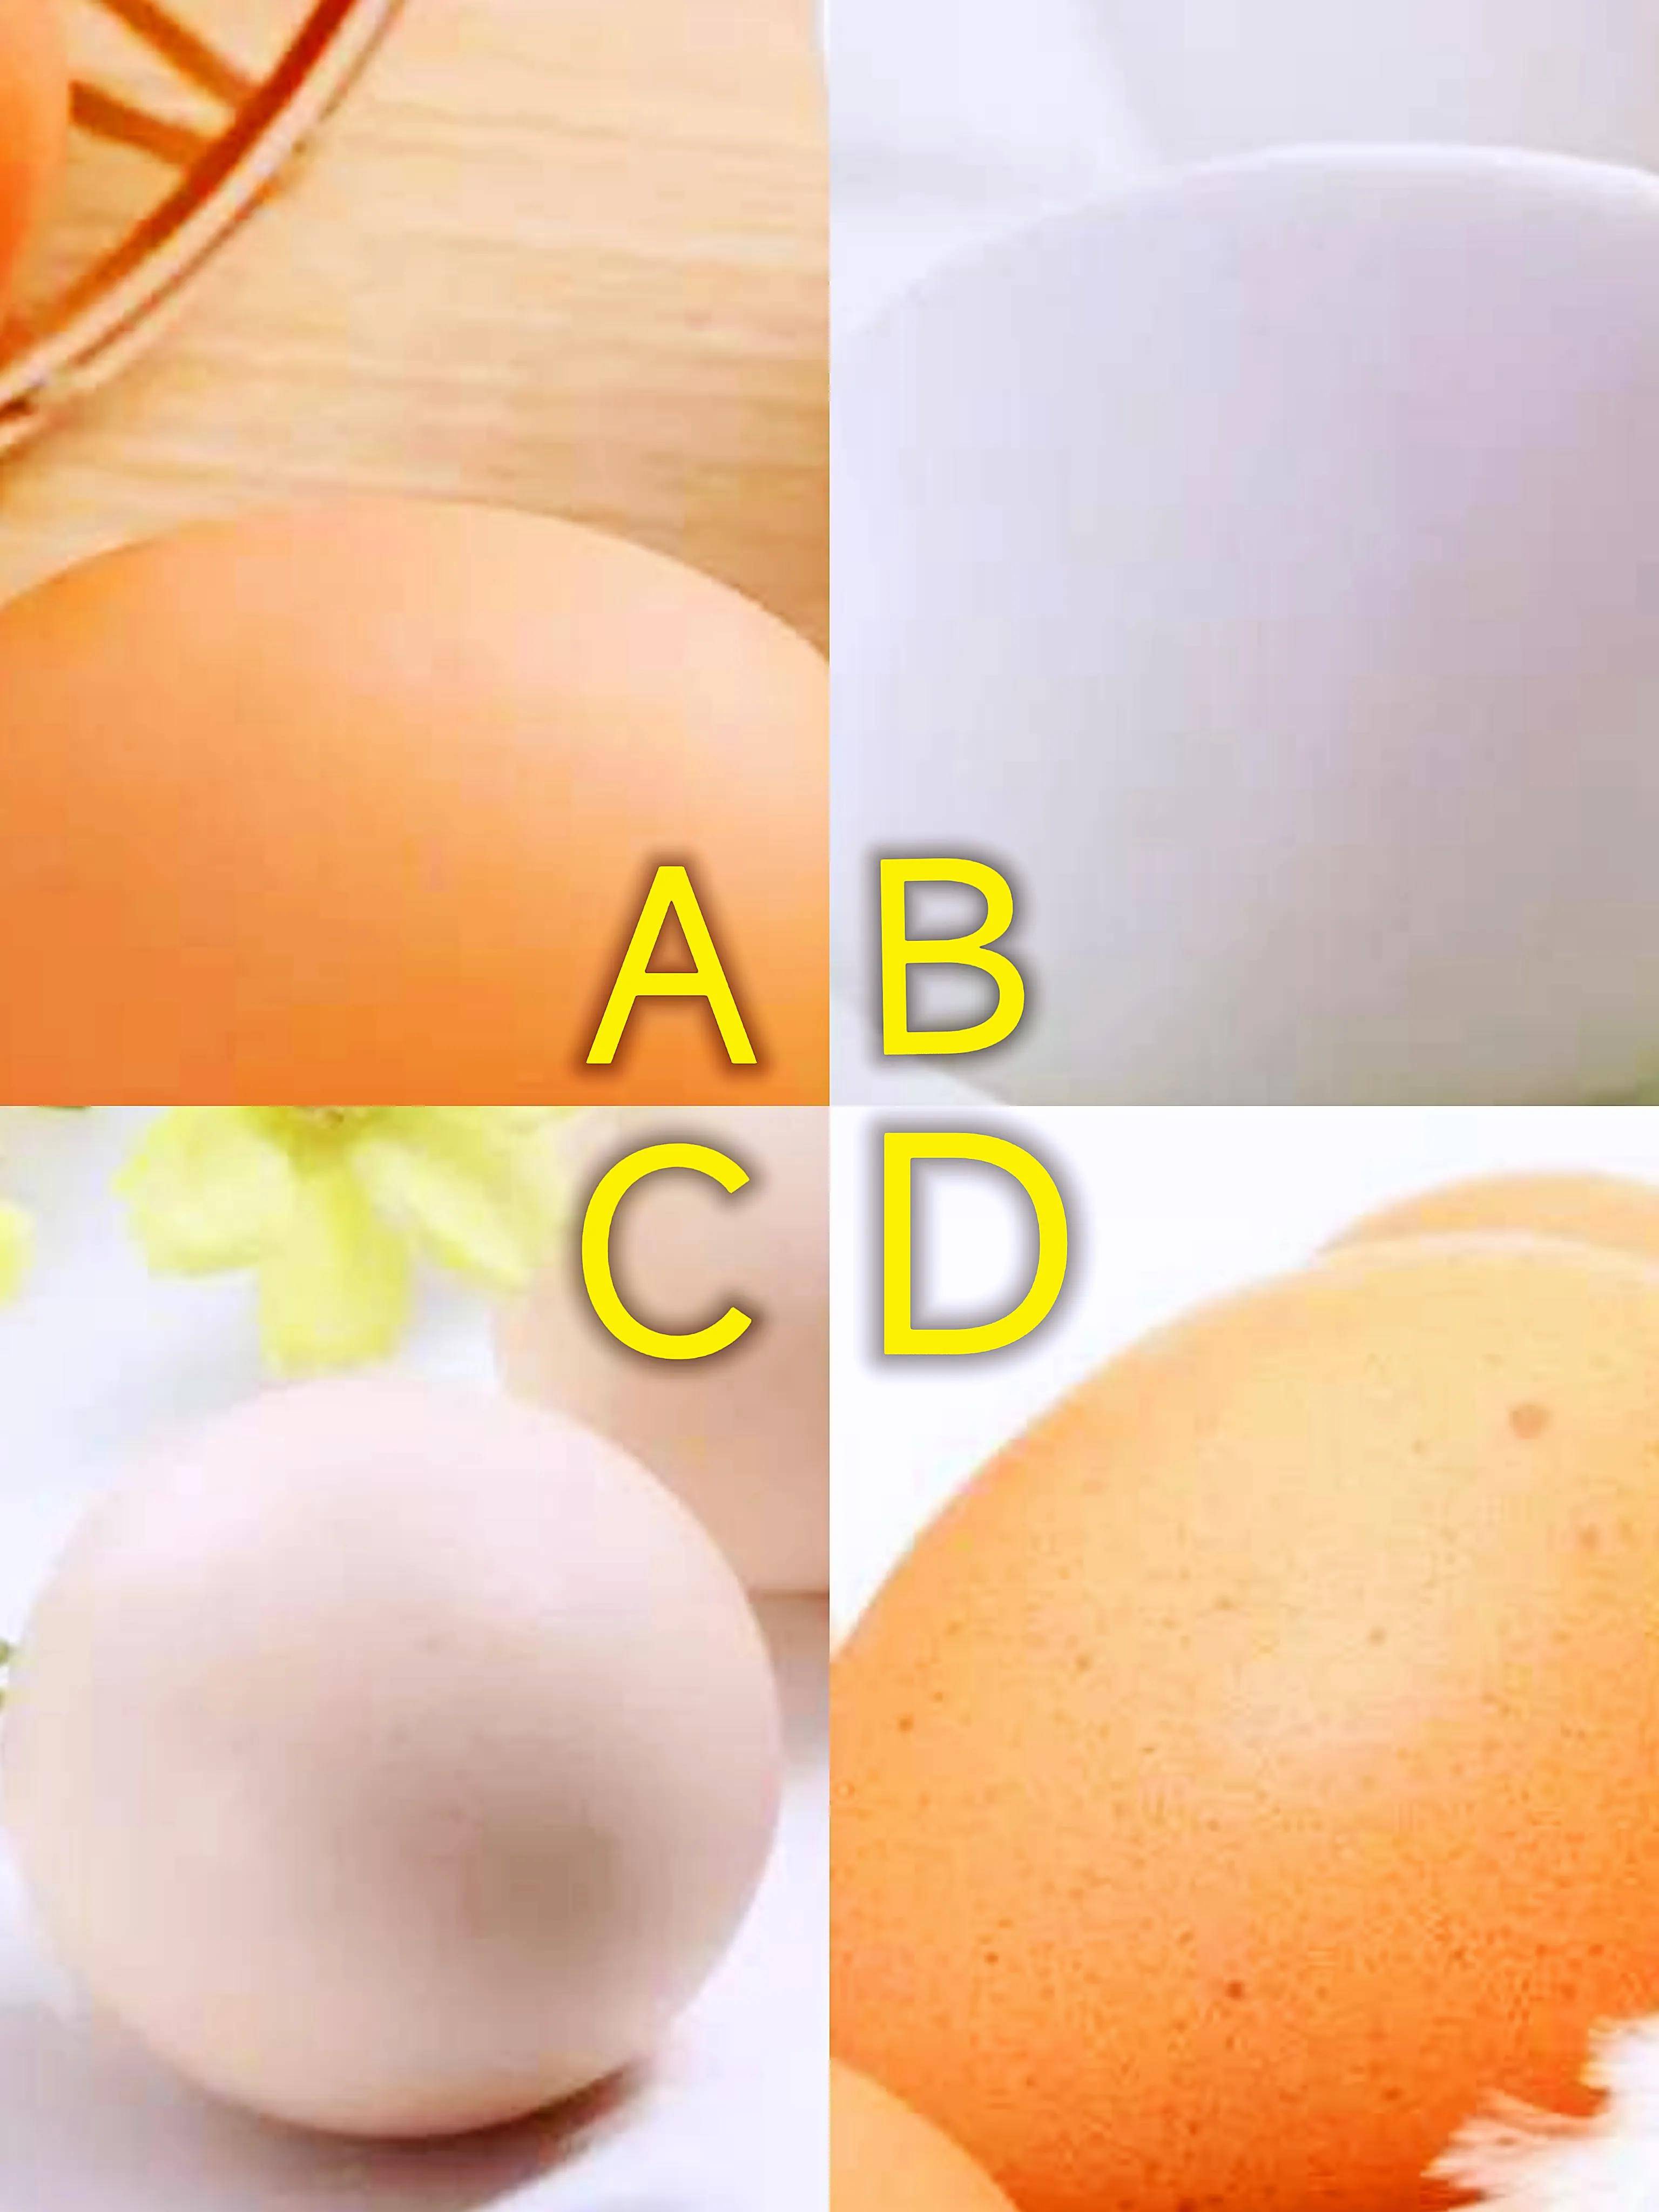 Trắc nghiệm tâm lý: Bạn nghĩ quả trứng nào có 2 lòng đỏ? - 1